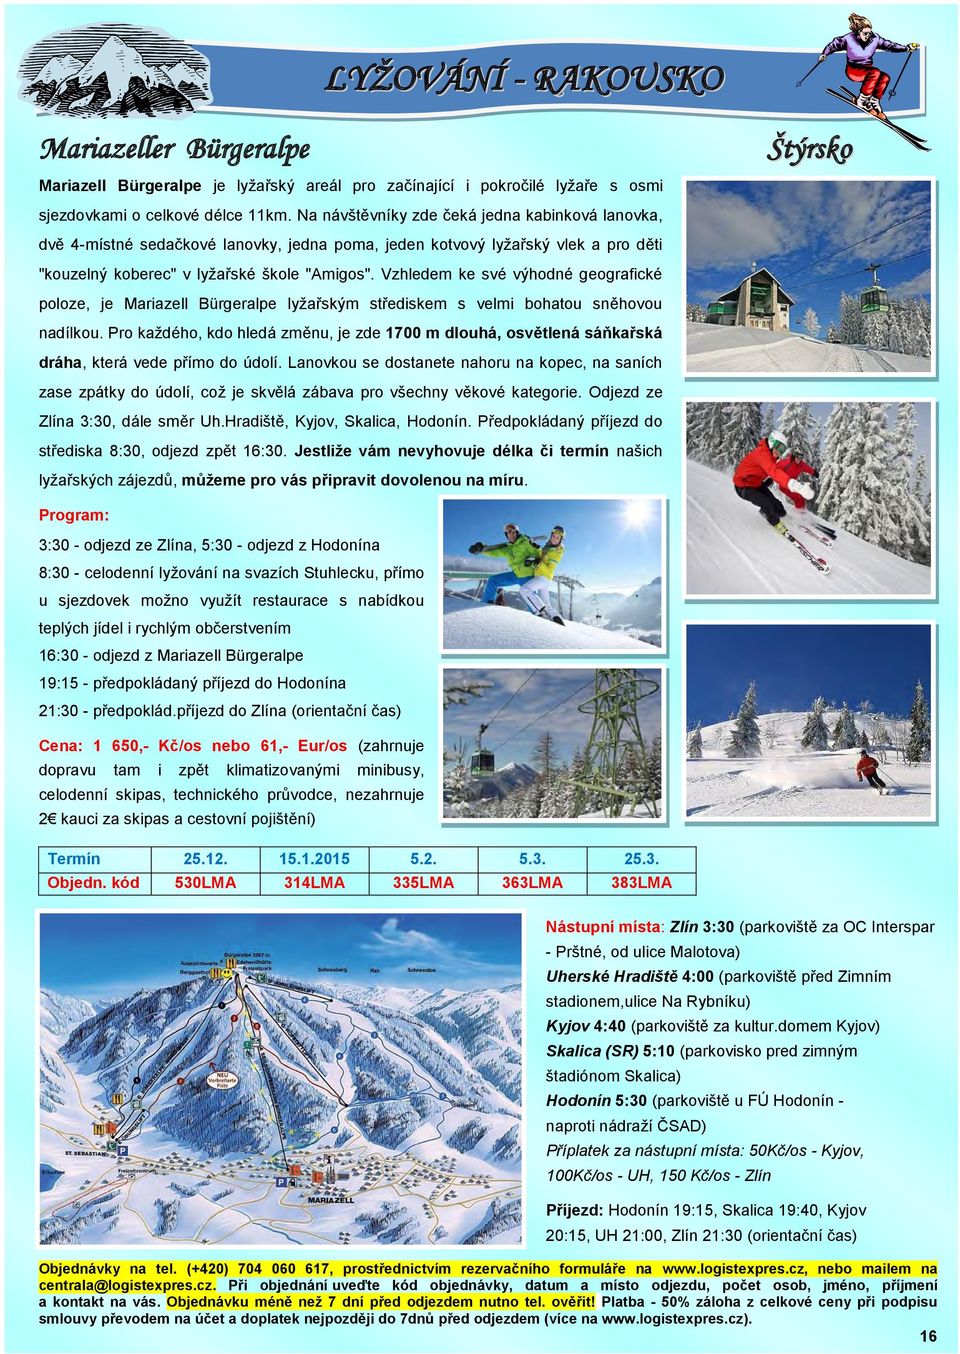 Vzhledem ke své výhodné geografické poloze, je Mariazell Bürgeralpe lyžařským střediskem s velmi bohatou sněhovou nadílkou.